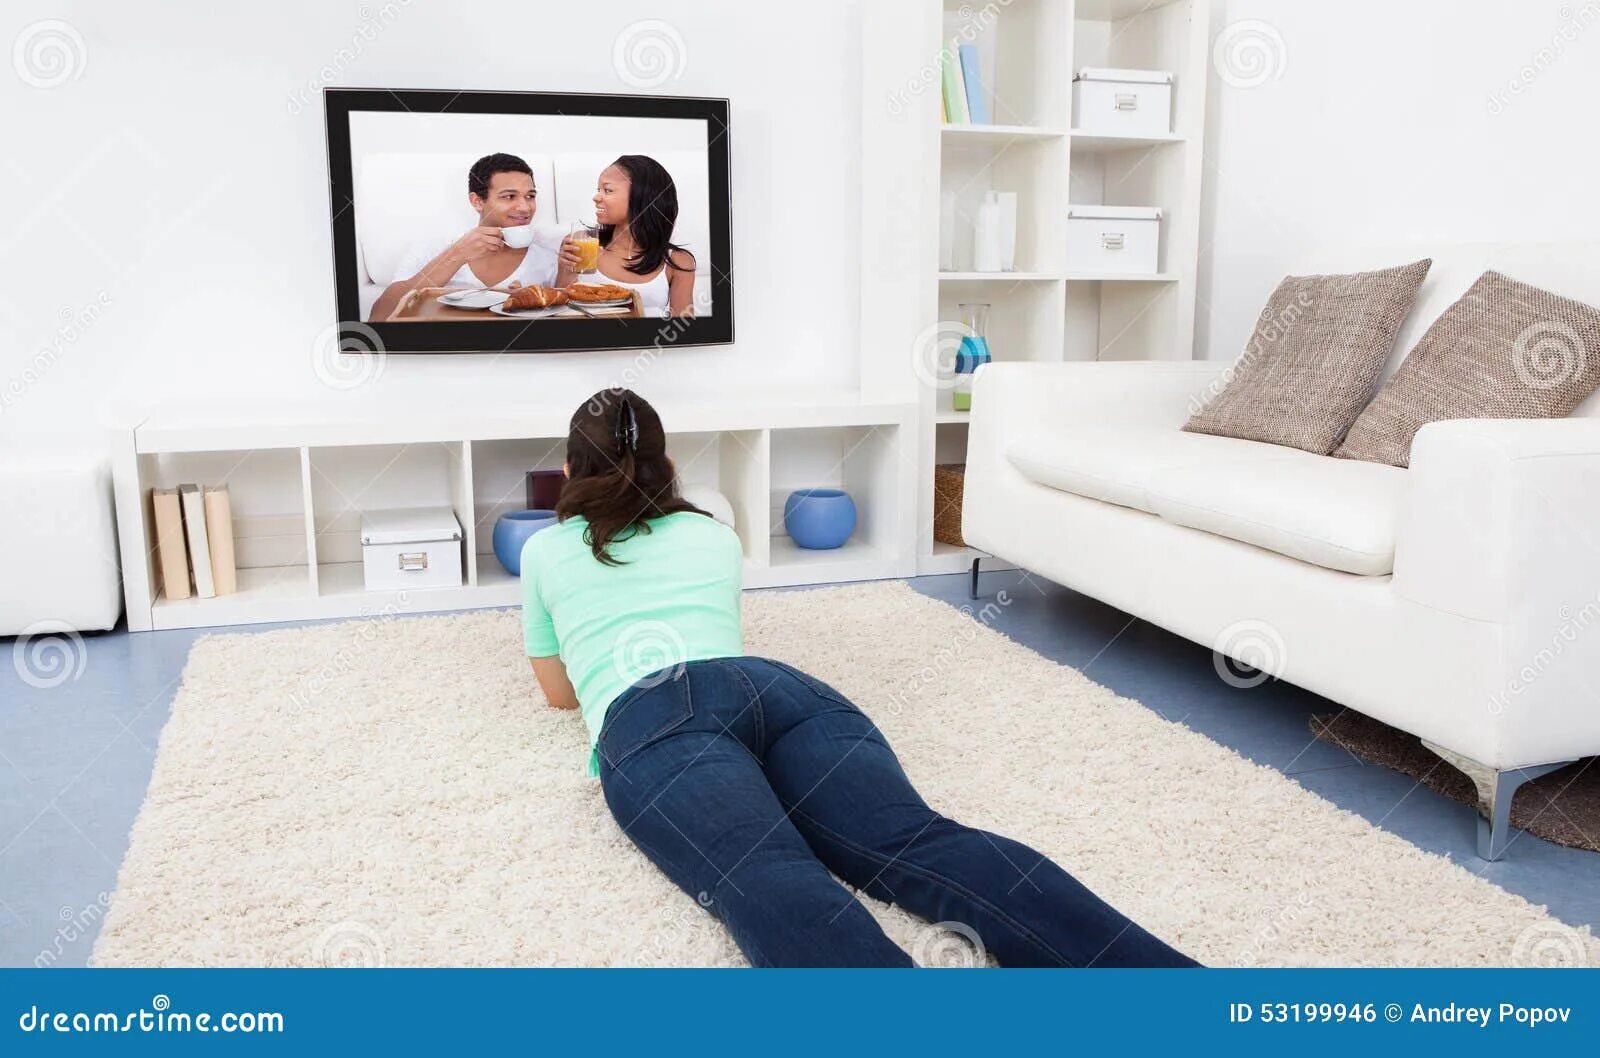 Пока муж смотрит телевизор жена. Лежит перед телевизором. Девушка и телевизор. Лежа перед телевизором. Женщина у телевизора.